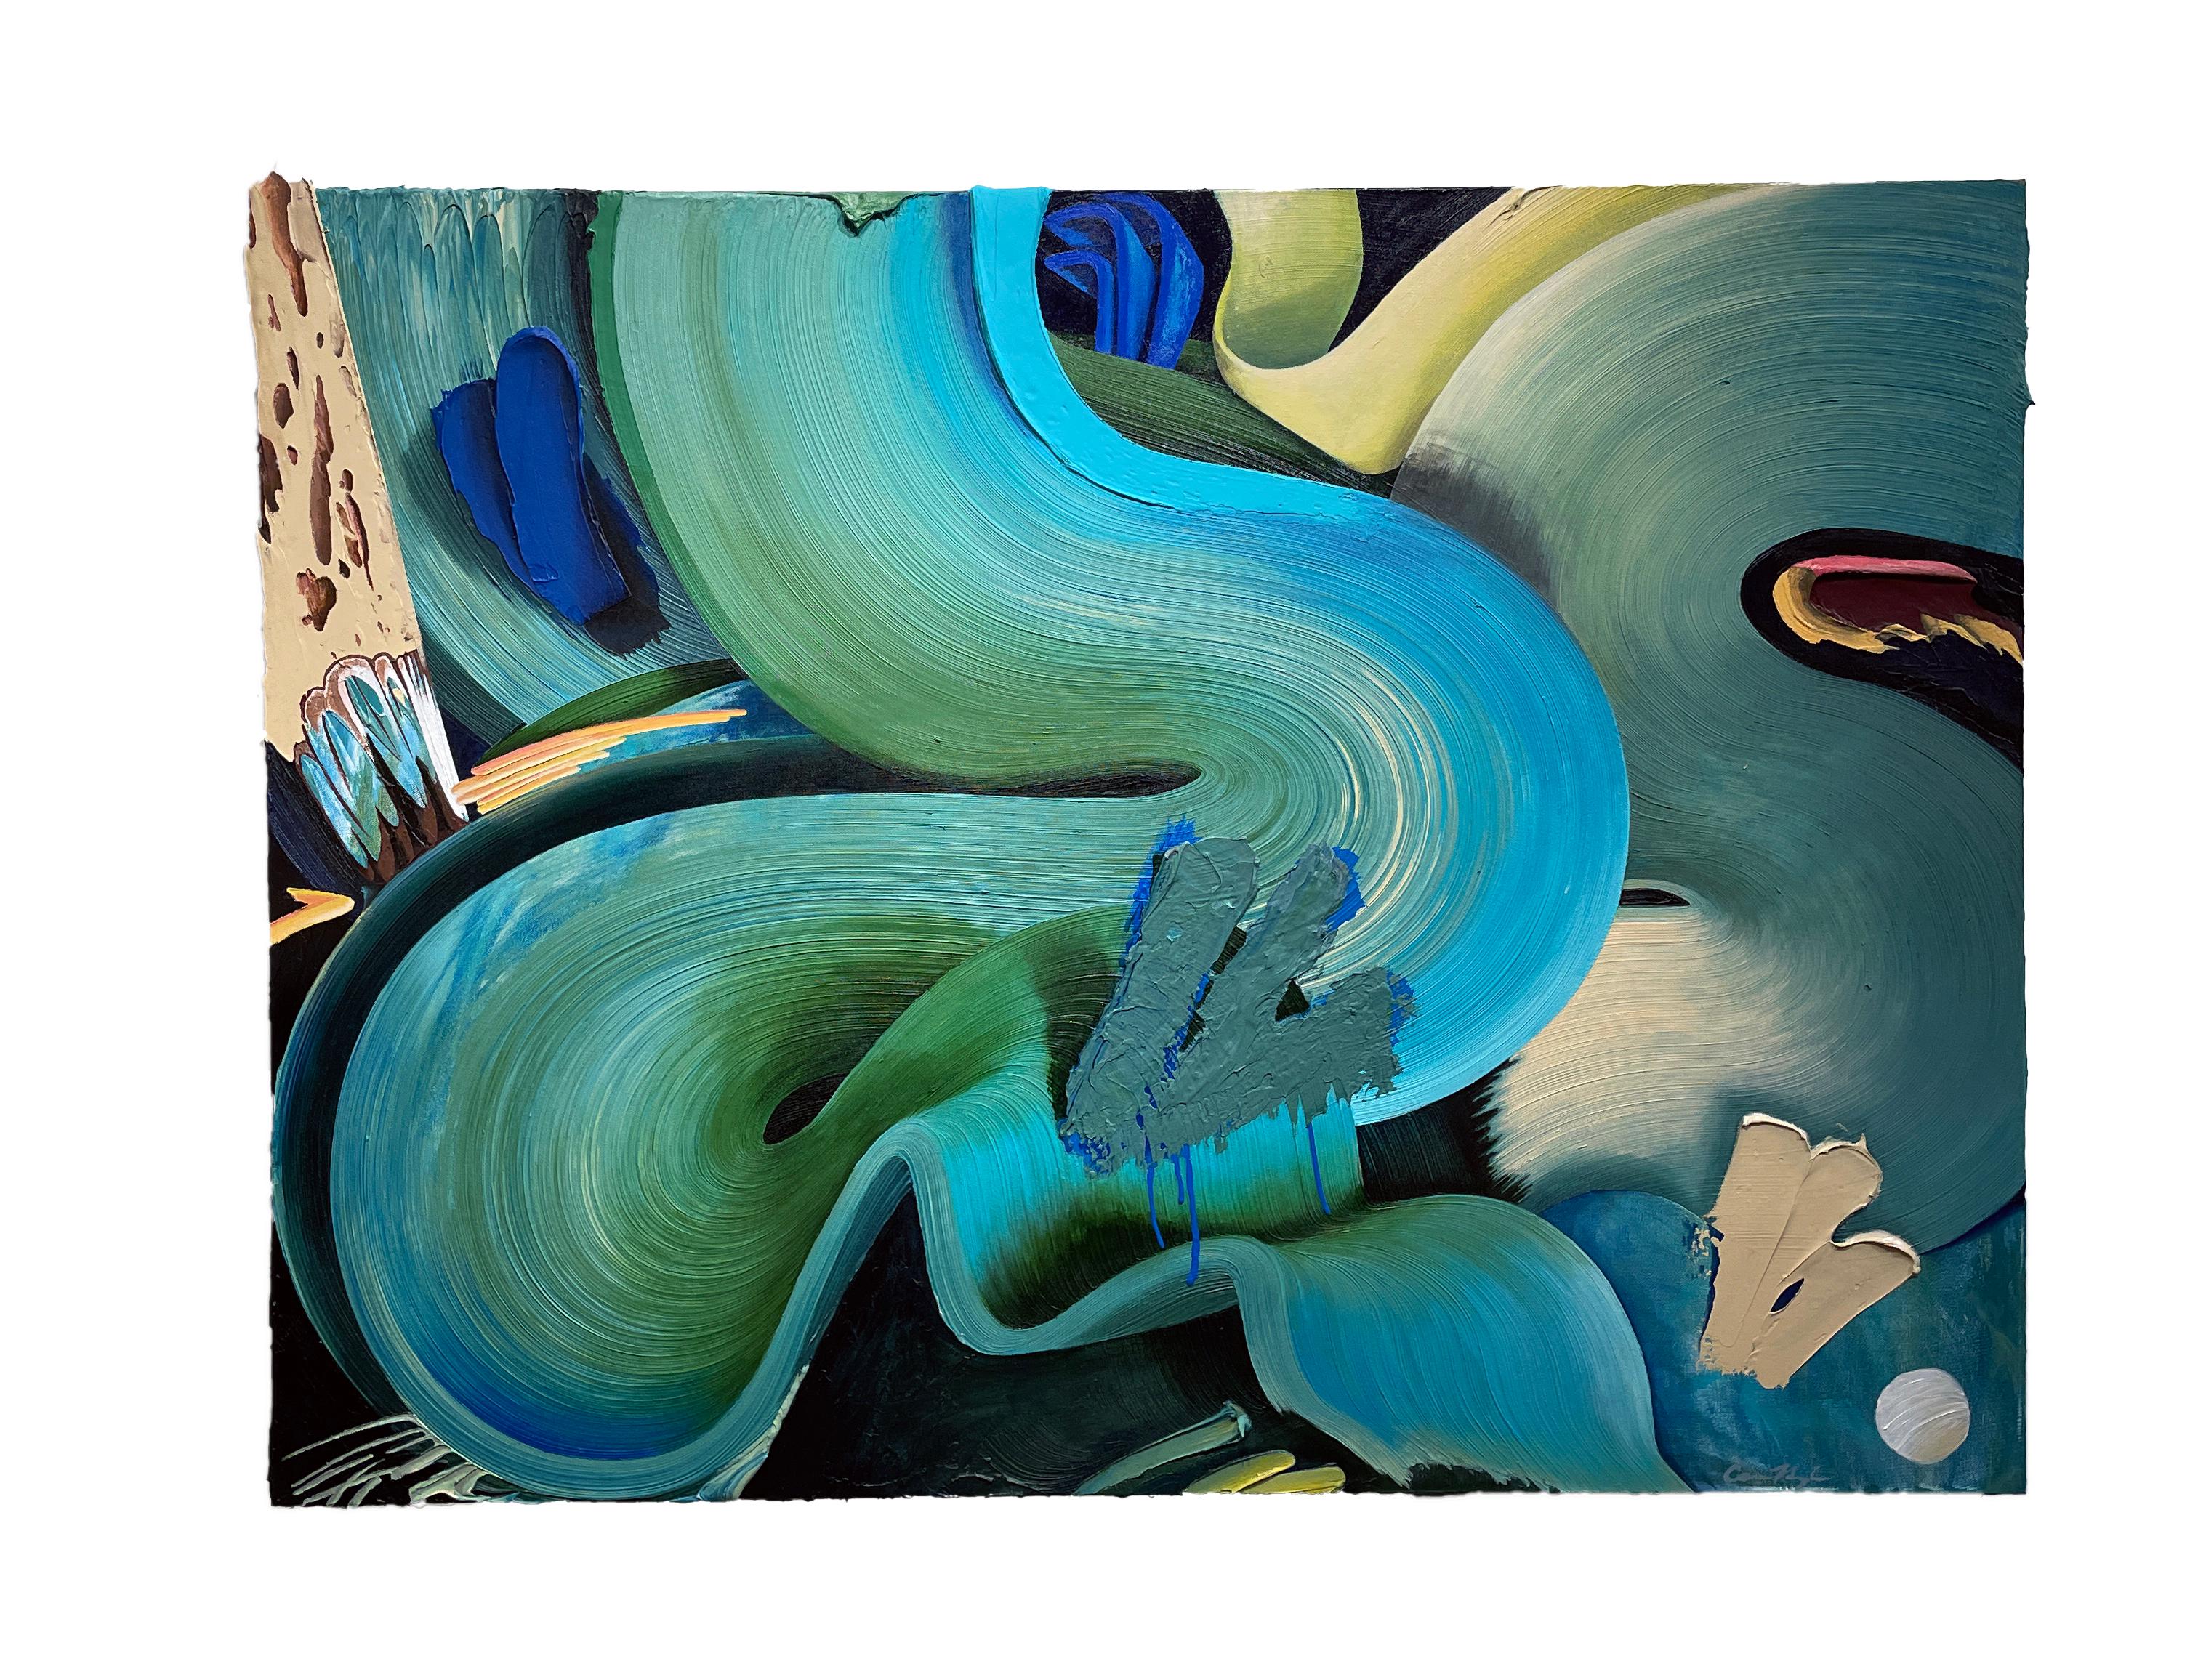 Connor Hughes Abstract Painting – Haven, Abstrakter Expressionismus, Gemälde im Graffiti-Stil in Blau- und Grüntönen